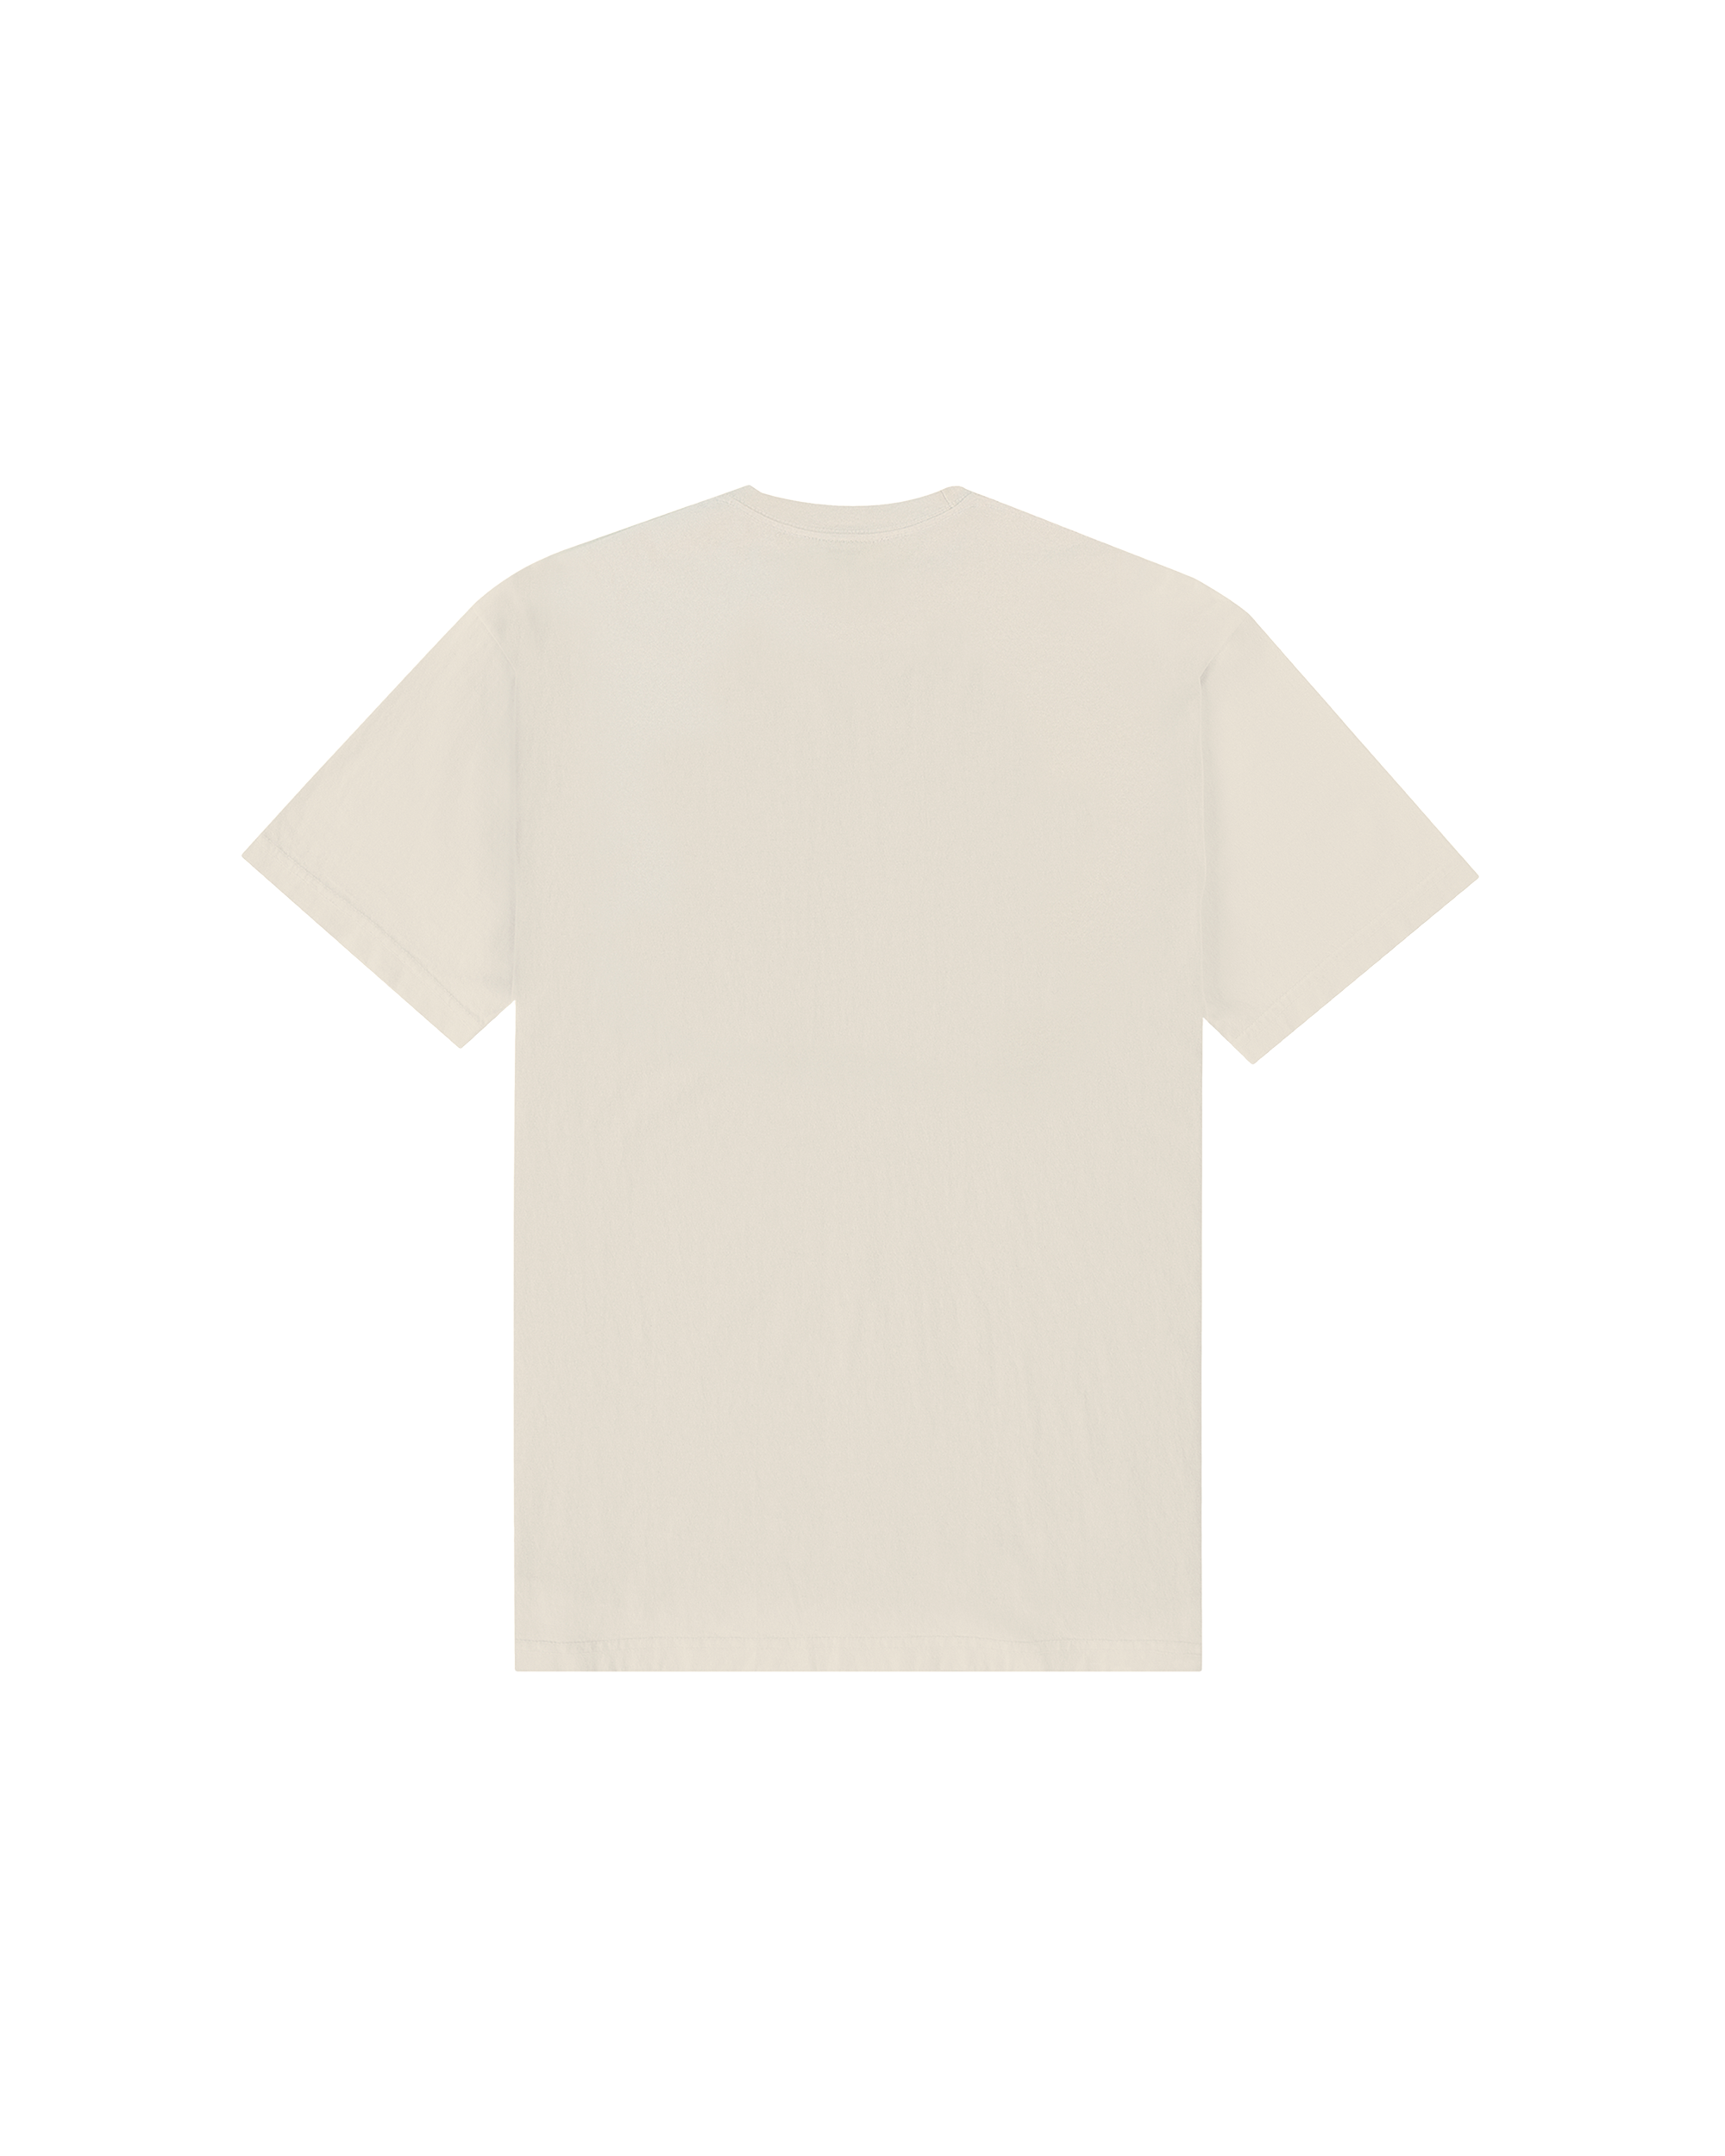 Department Store T-shirt - Crème